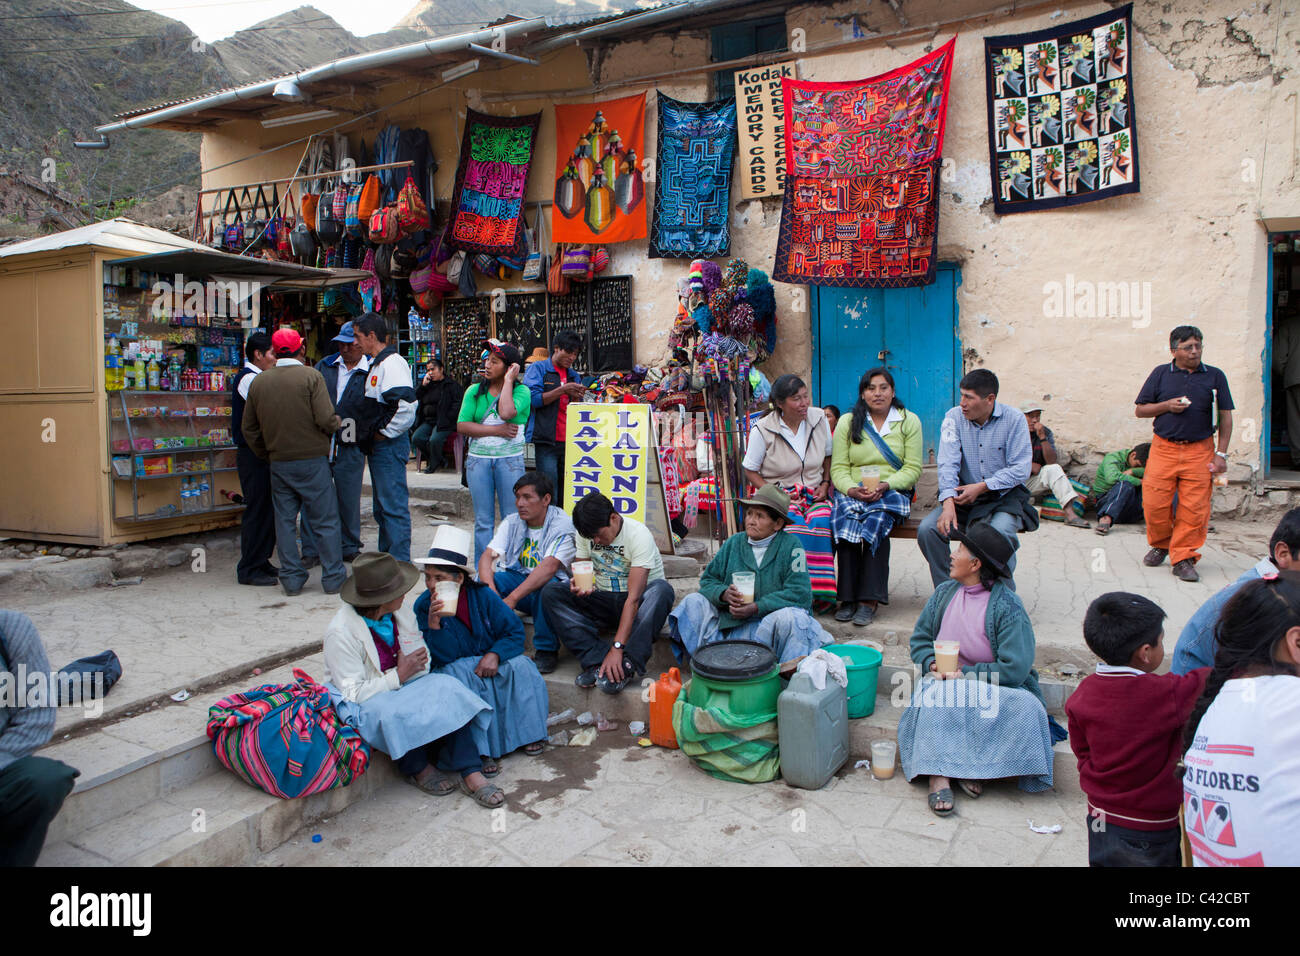 Il Perù, Ollantaytambo, gente beve chicha, la birra indiana fatta di mais, sulla piazza principale. Foto Stock